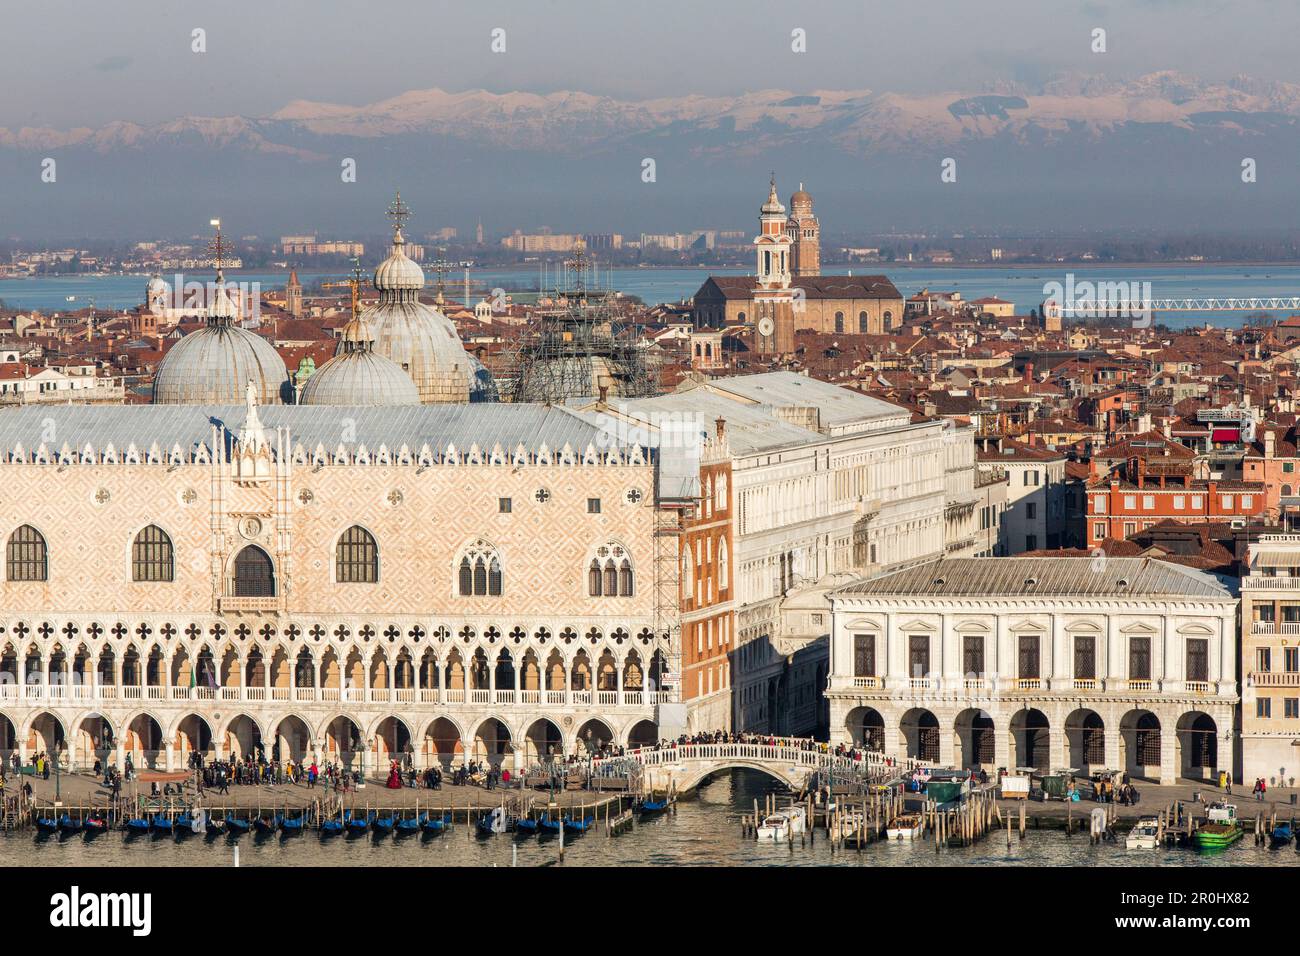 Veduta aerea di venezia con il Campanile di San marco, montagne innevate delle Alpi sullo sfondo, Venezia, Veneto, Italia Foto Stock